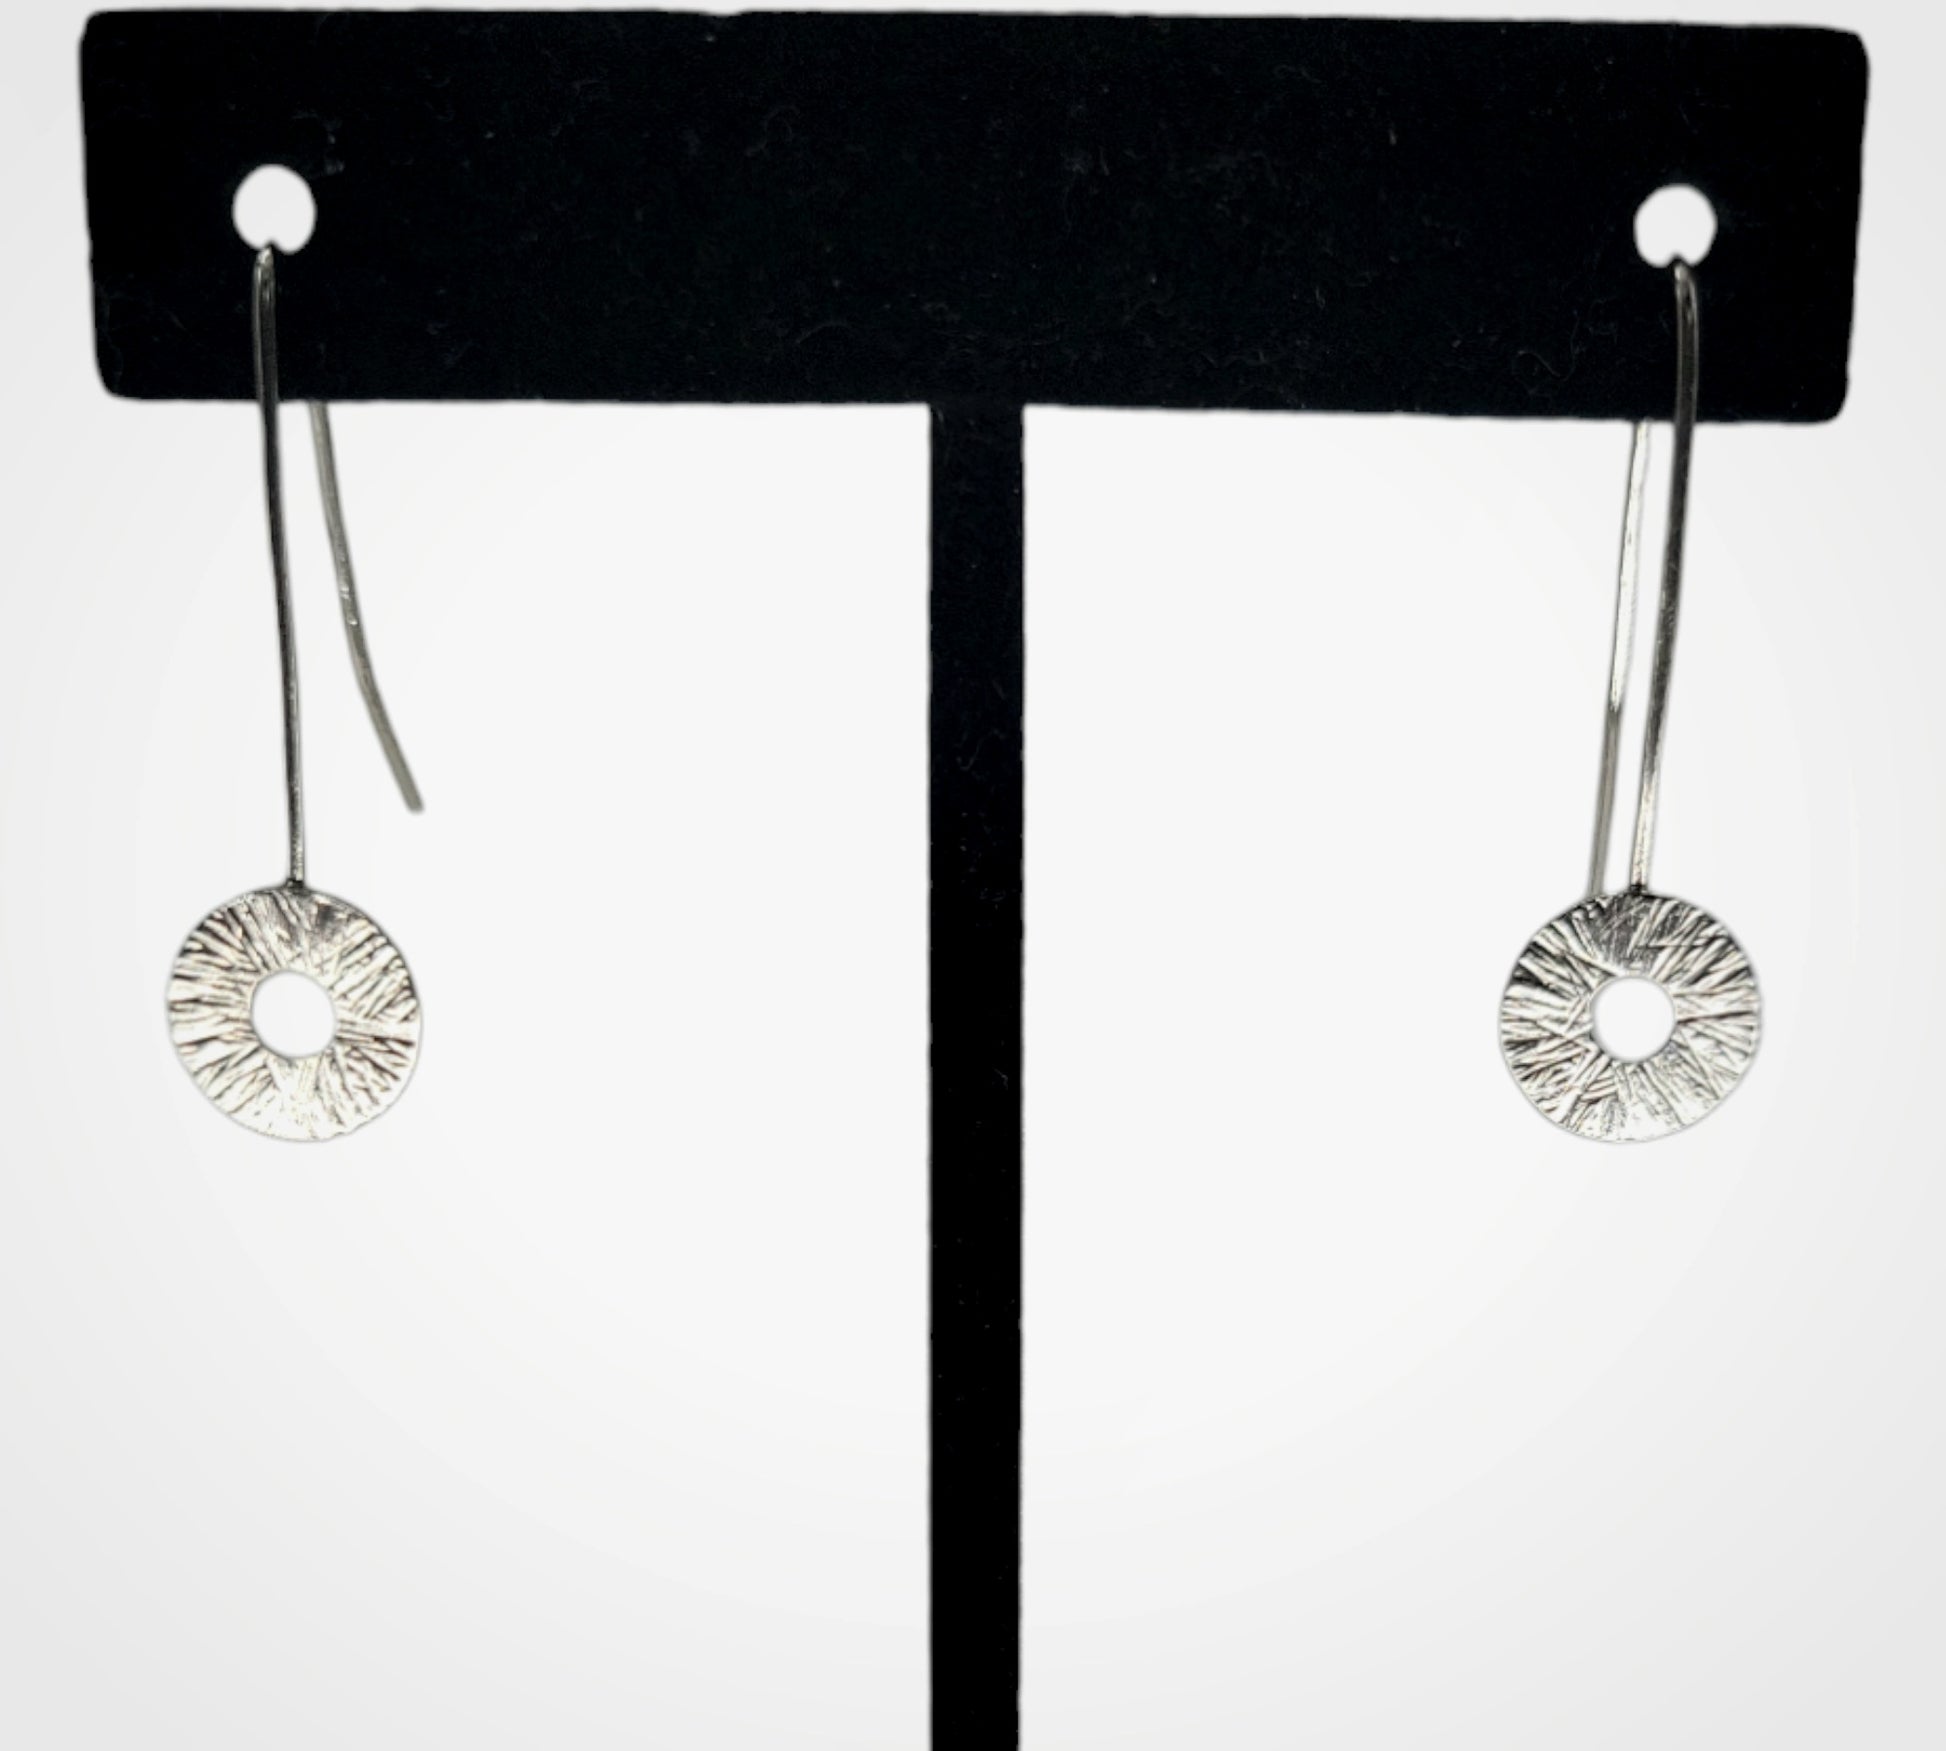 Sterling silver Manifestation earrings drop earrings by inspirational jewelry artist Jaclyn Nicole